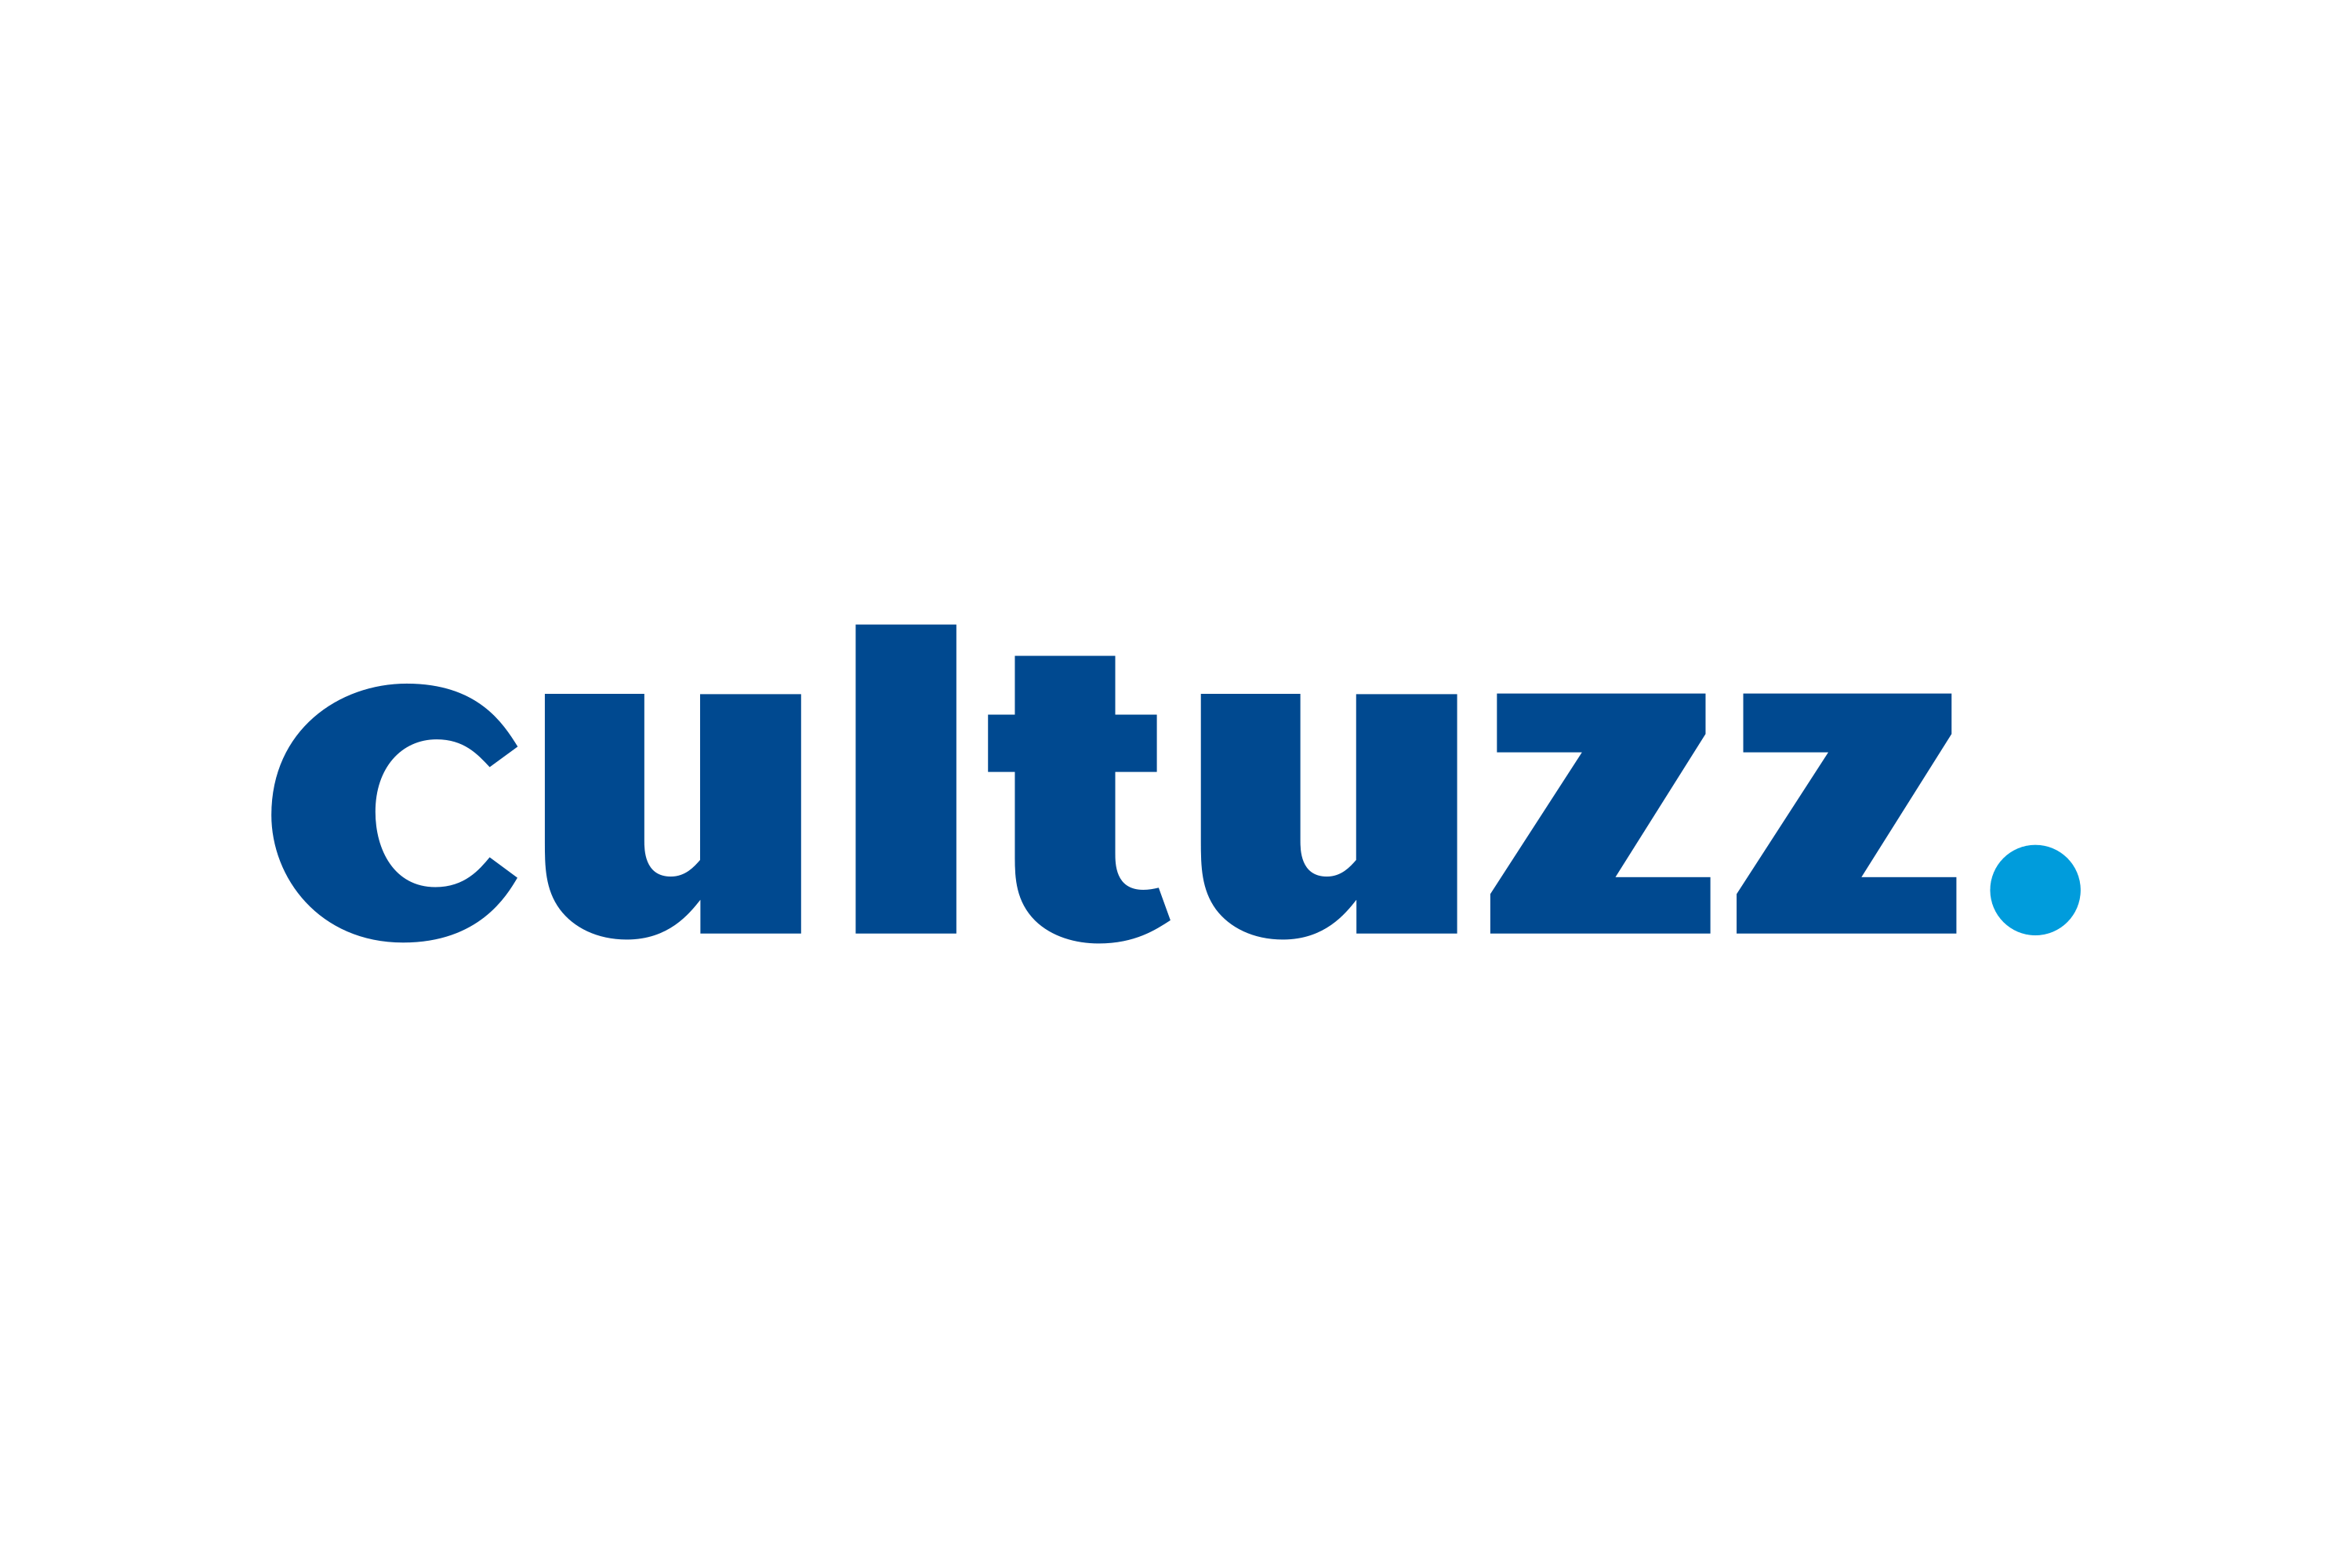 Cultuzz Logo